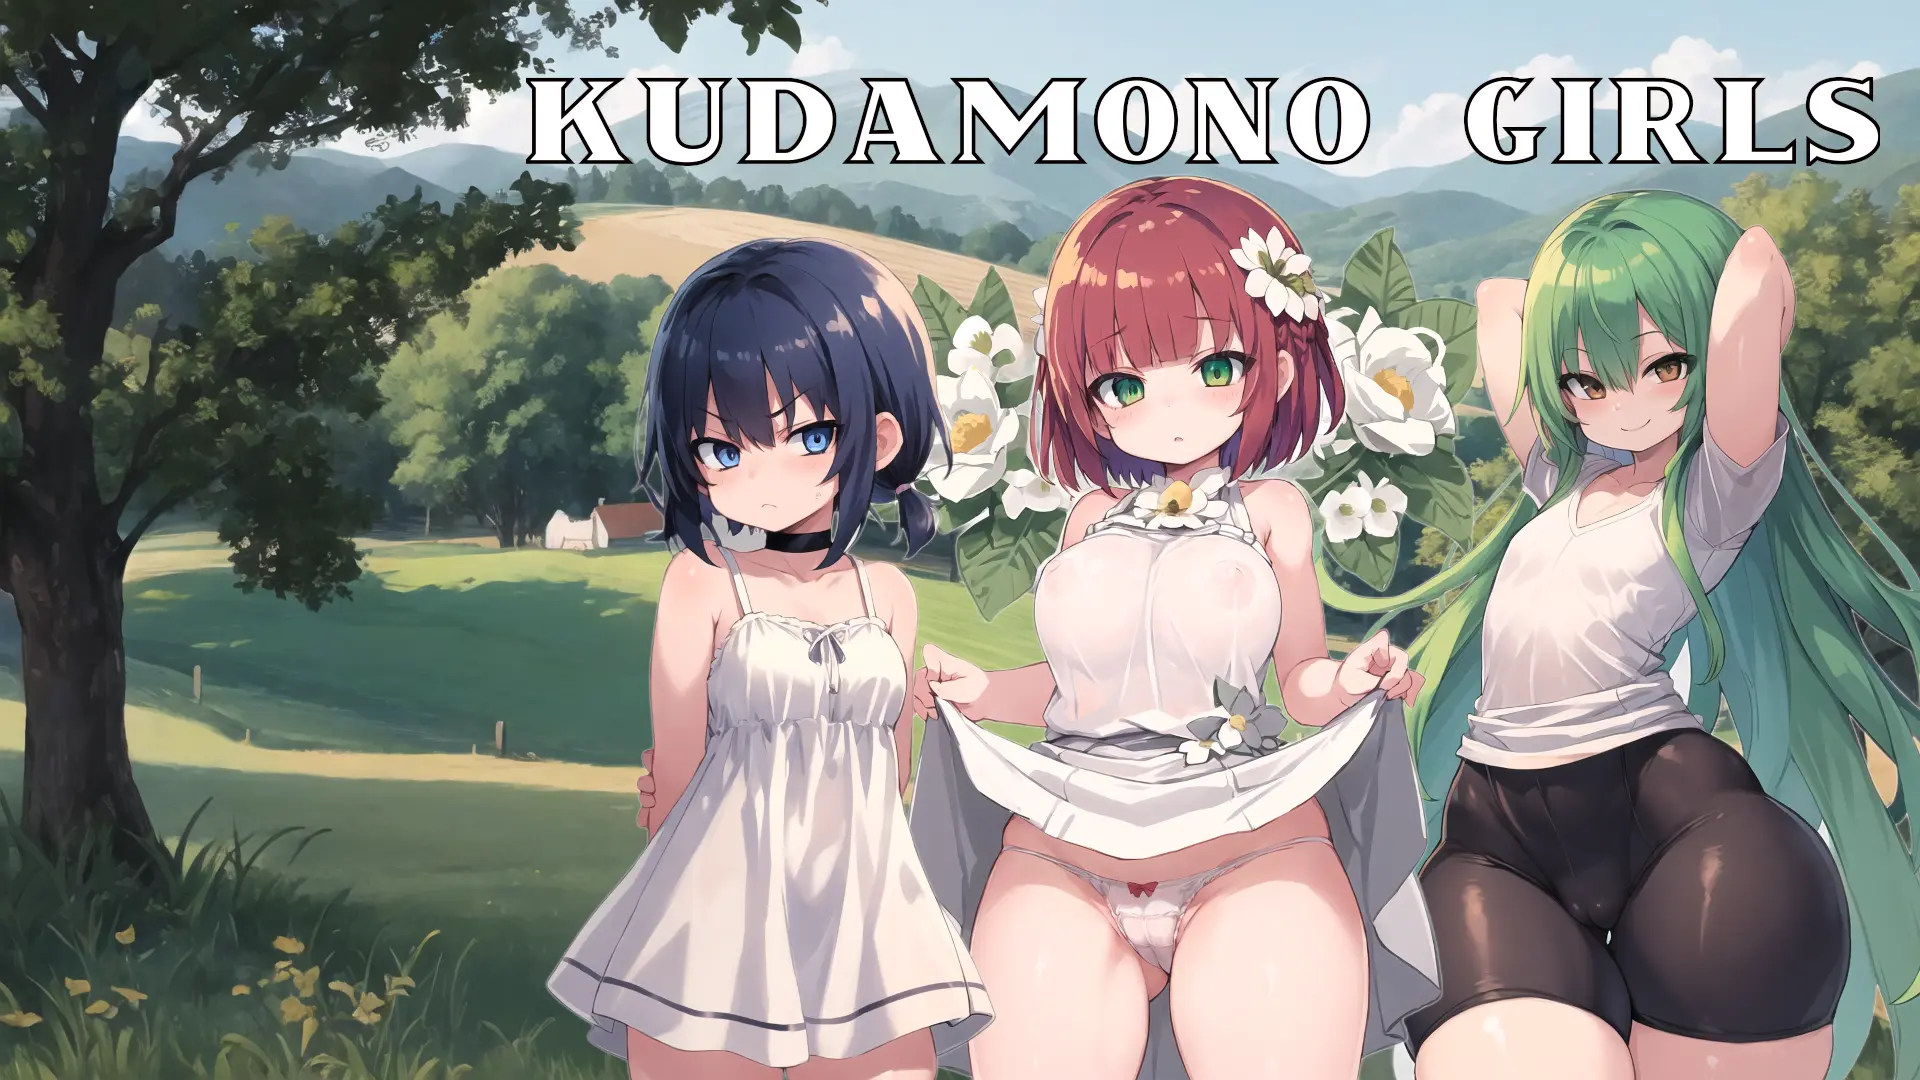 Kudamono Girls main image